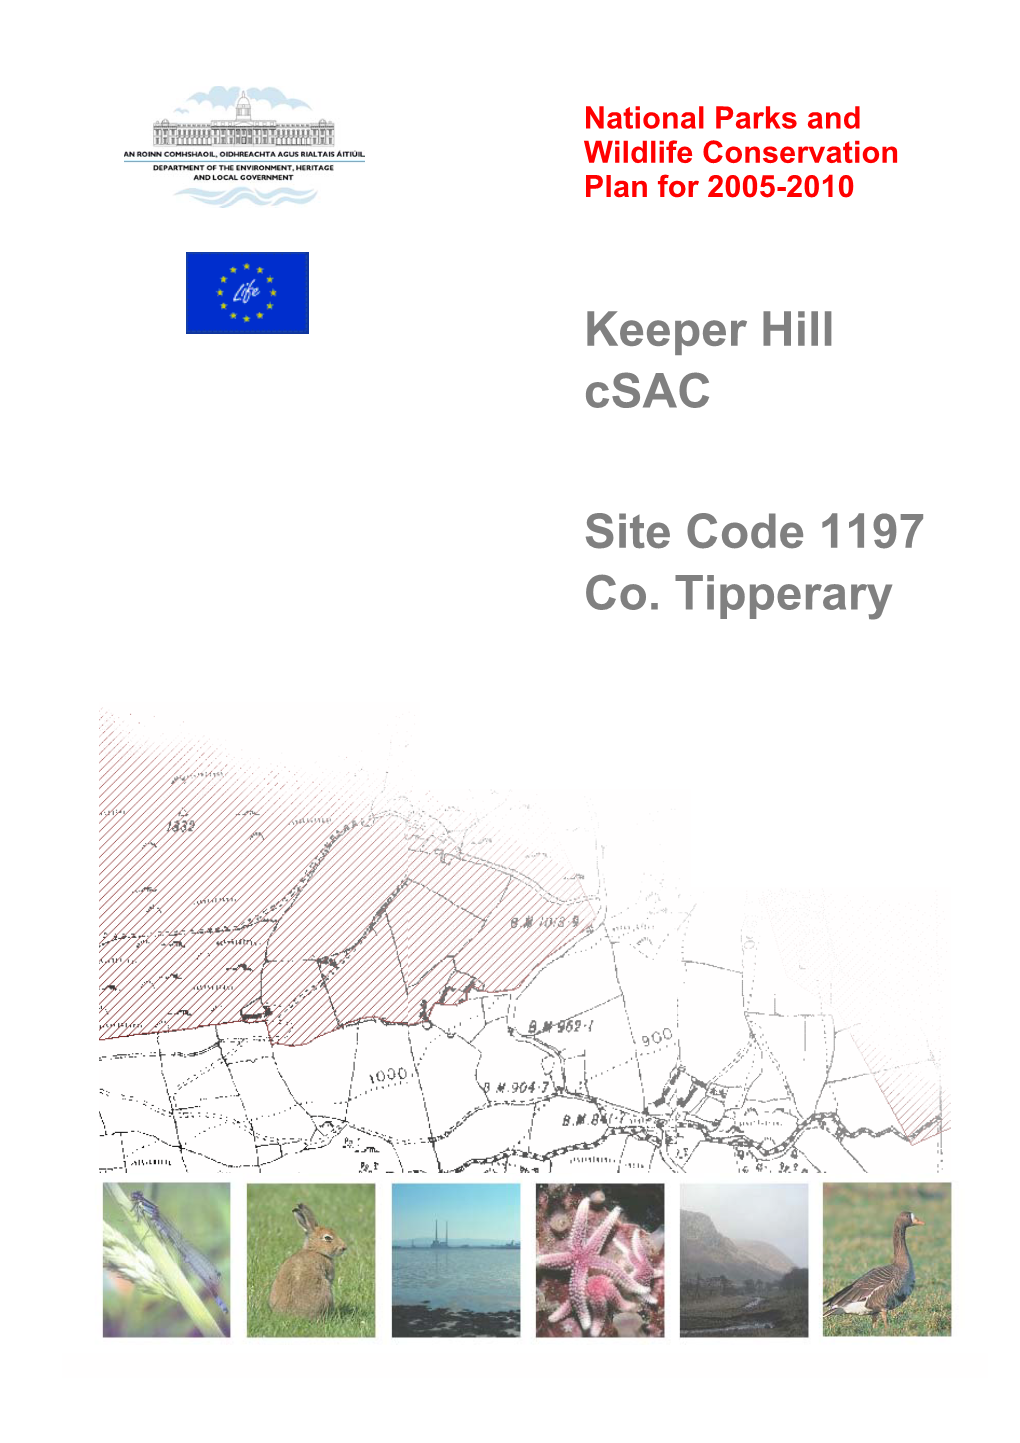 Keeper Hill Csac